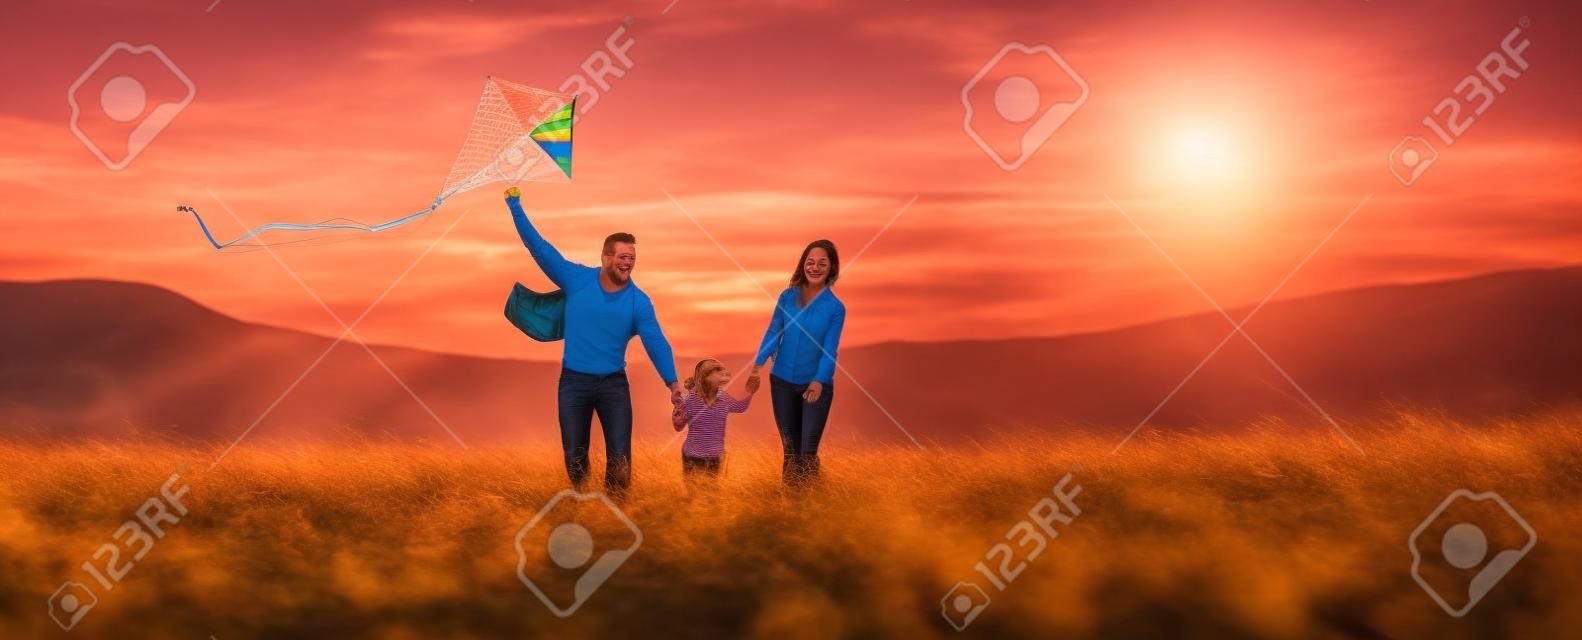 La figlia felice del padre, della madre e del bambino della famiglia lancia un aquilone sulla natura al tramonto